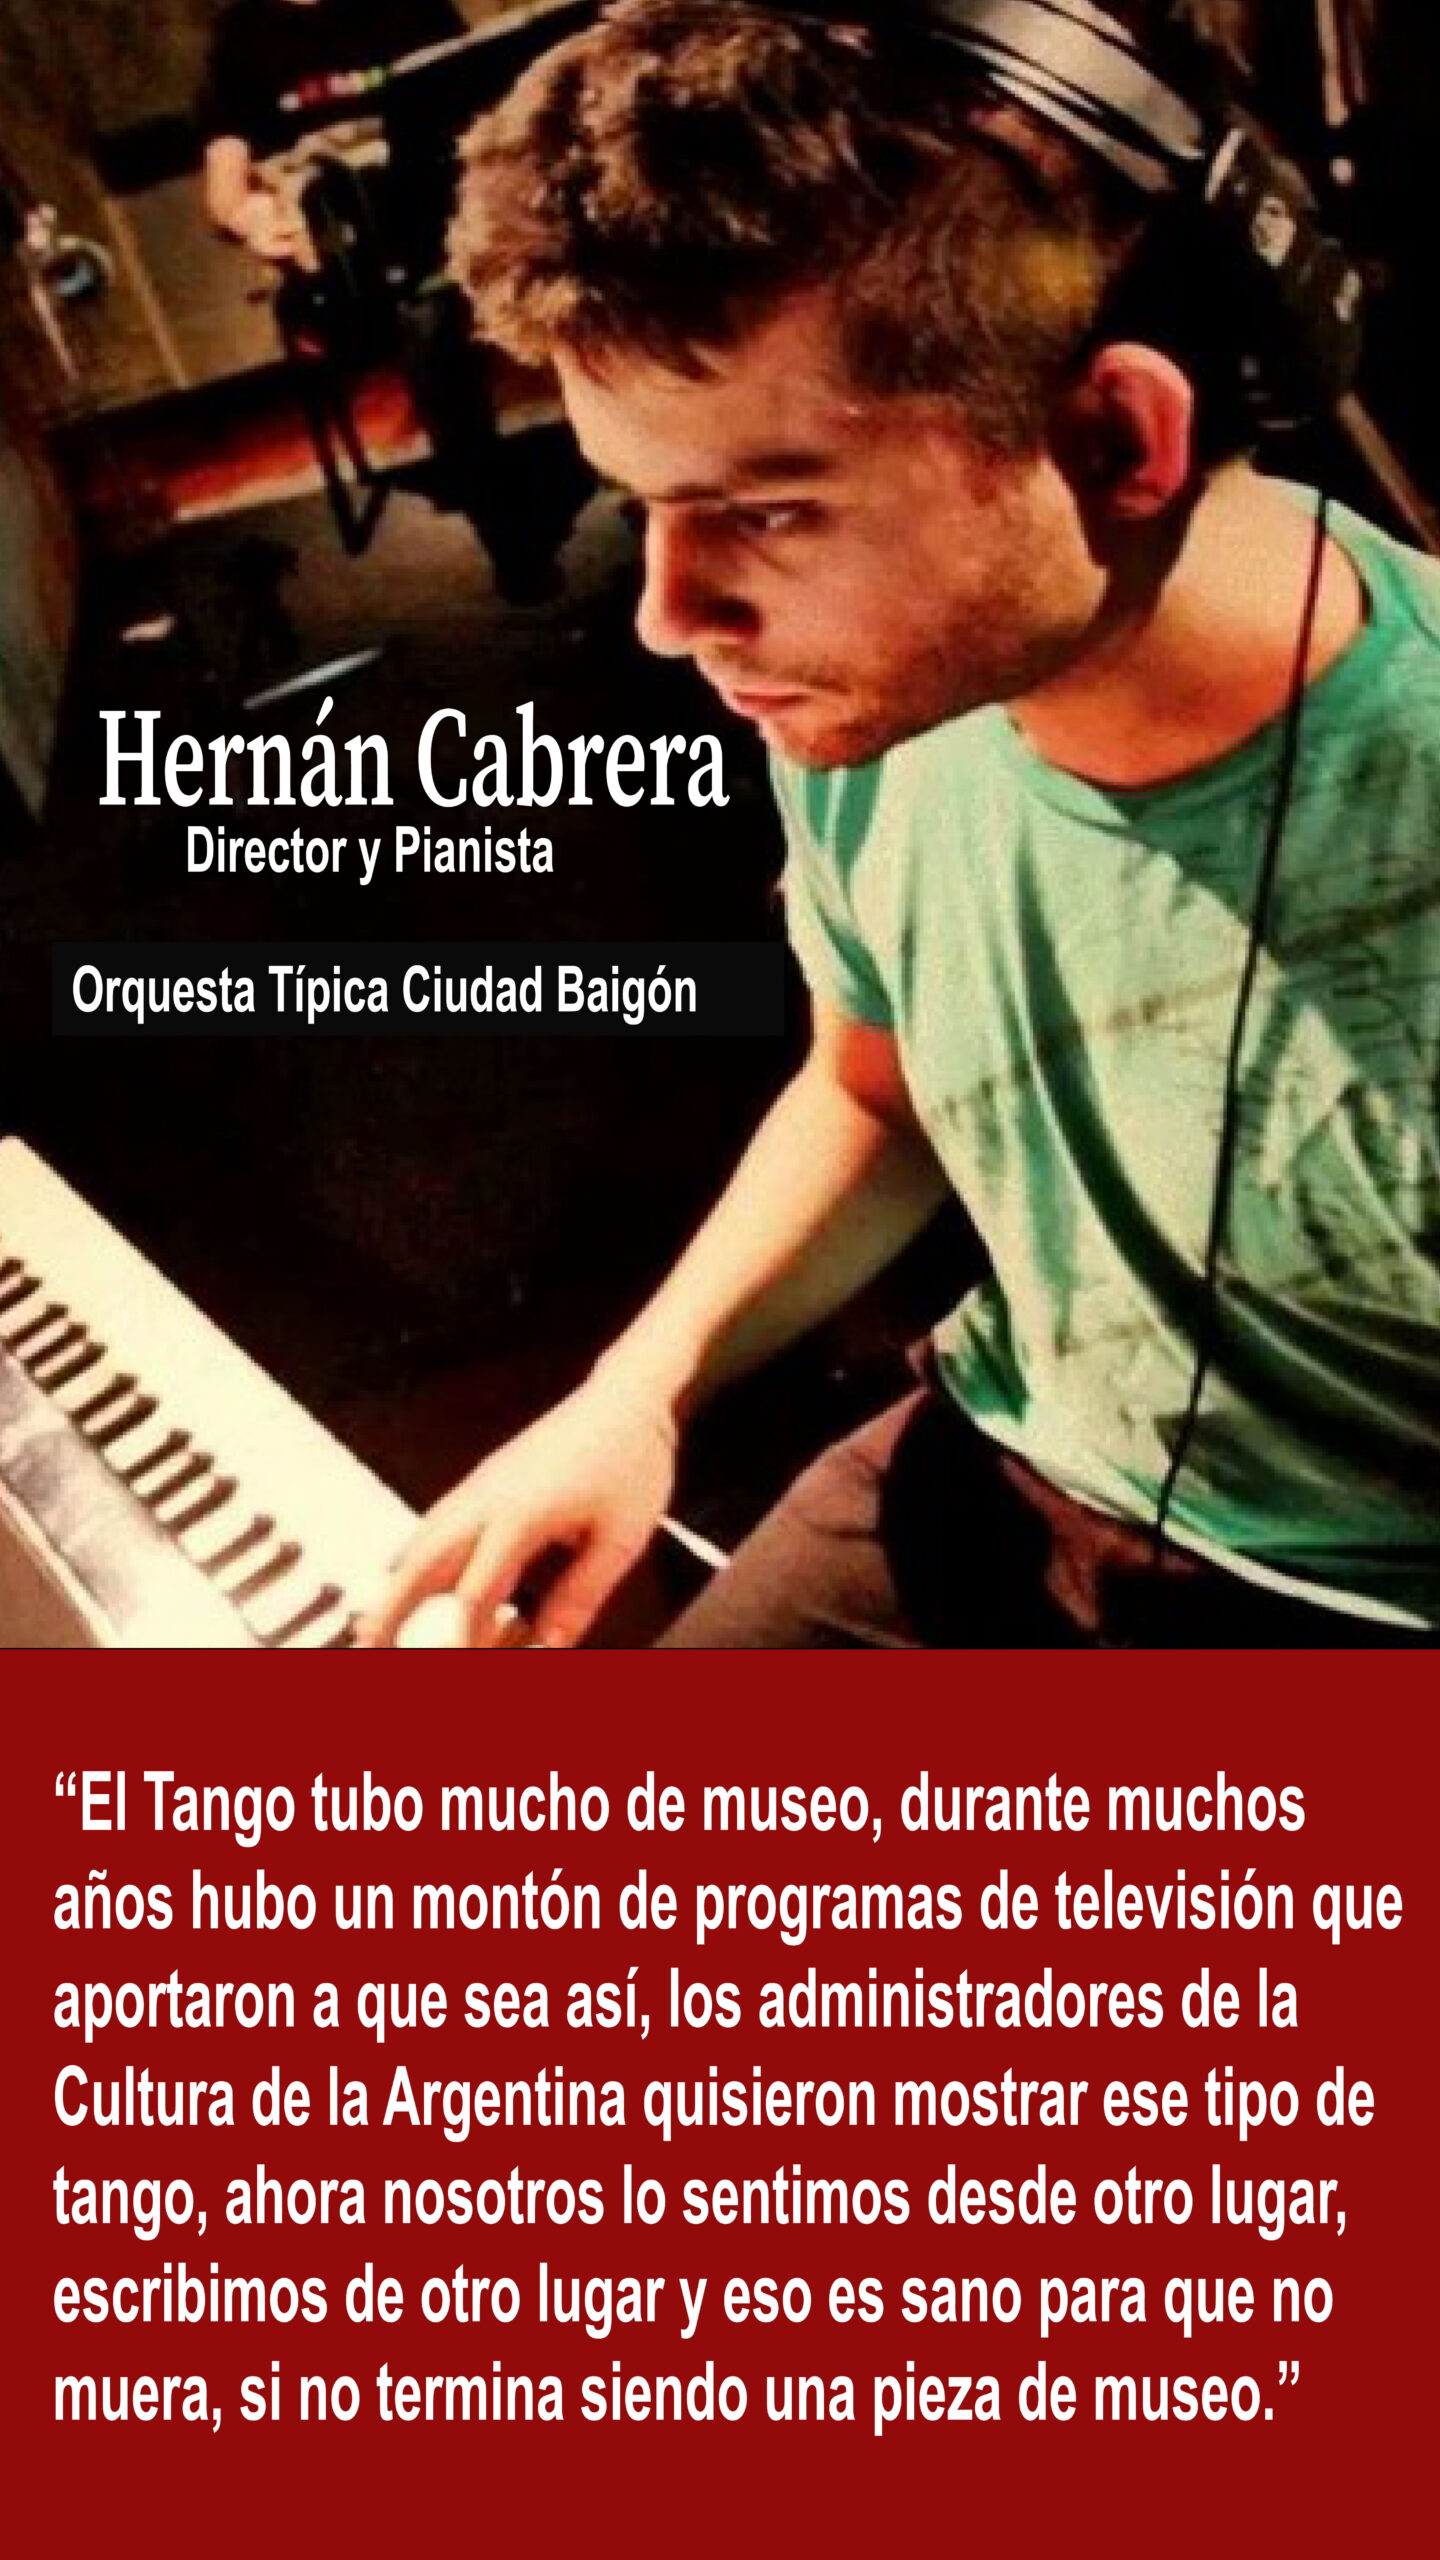 Hernan Cabrera